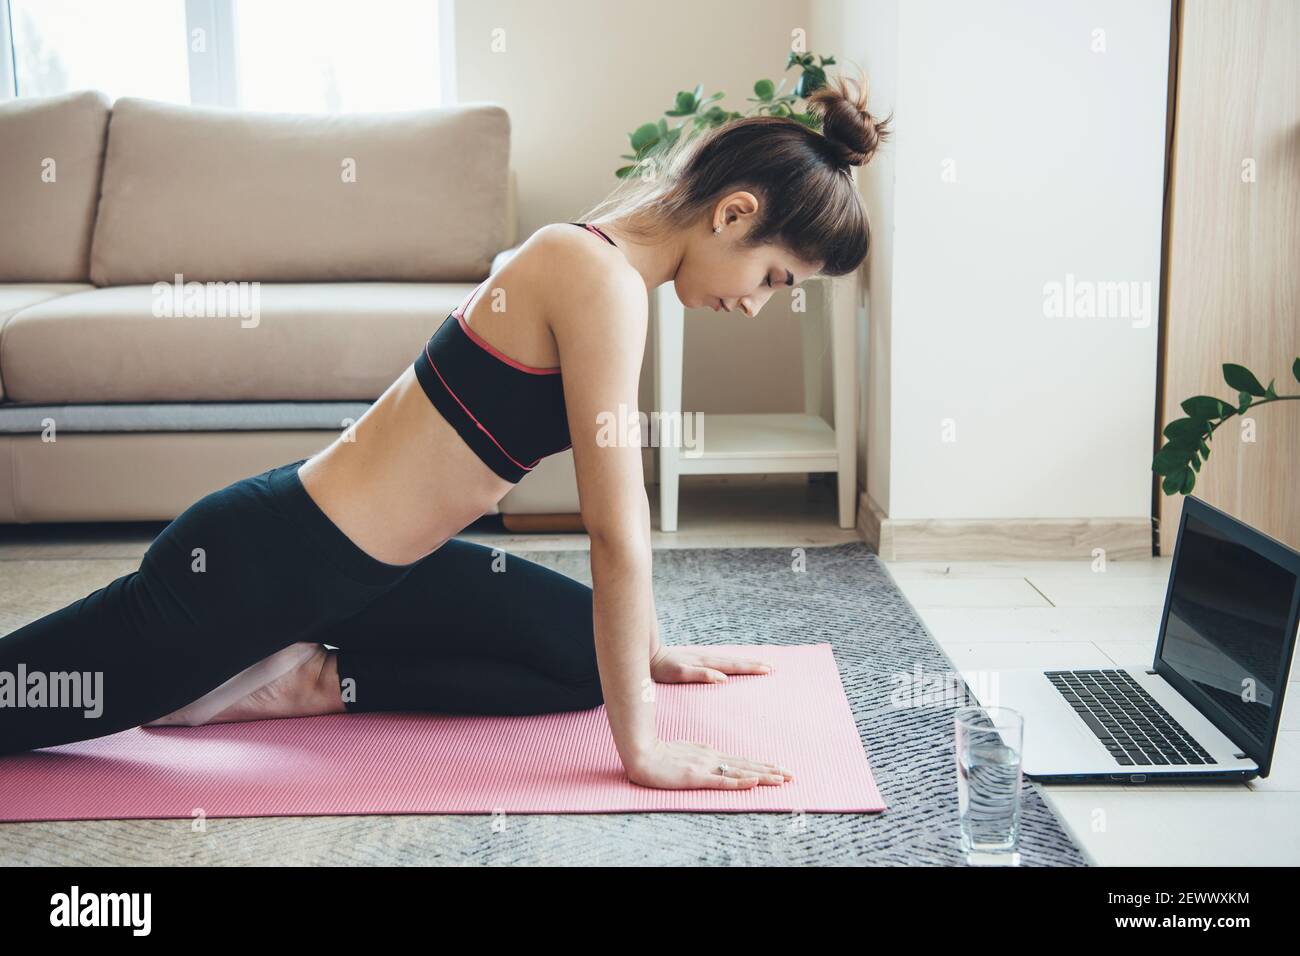 La femme caucasienne portant des vêtements de sport fait des exercices de remise en forme sur le sol avec un ordinateur portable et un verre avec de l'eau Banque D'Images